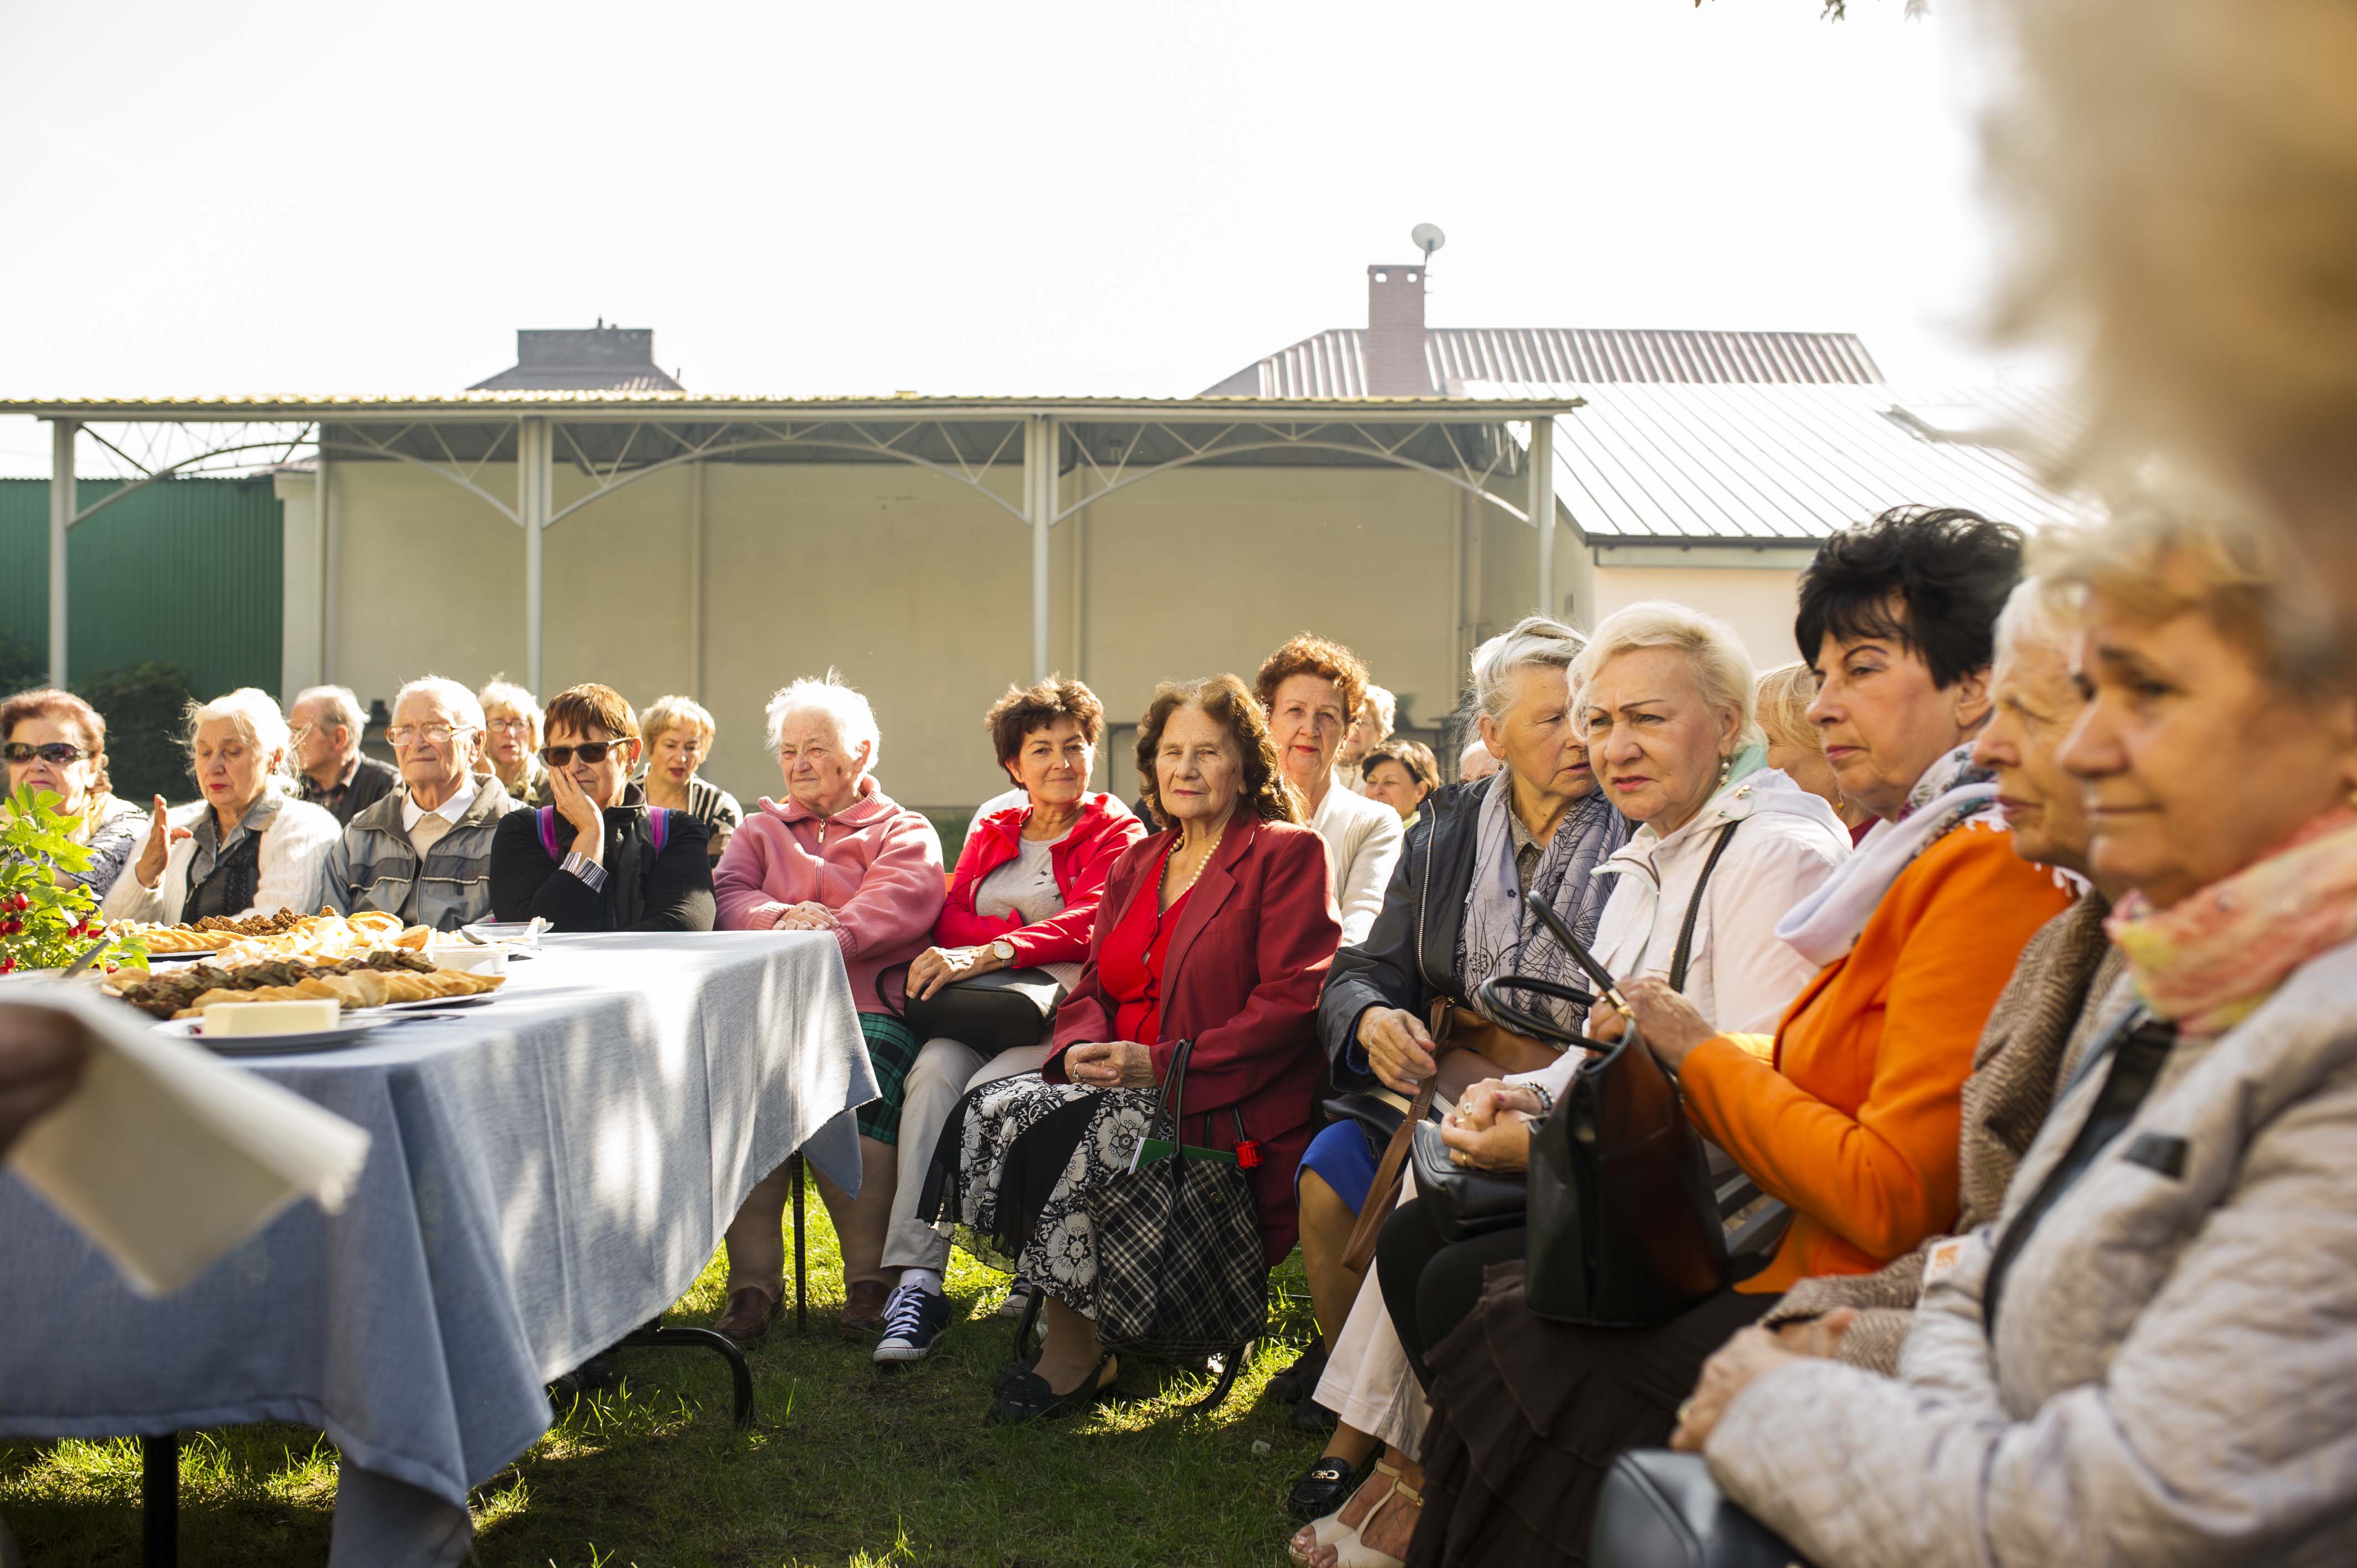 Śniadanie francuskie dla seniorów. Na słonecznym dziedzińcu domu kultury przy zastawionym francuskimi smakołykami stole siedzą zgromadzeni seniorzy.